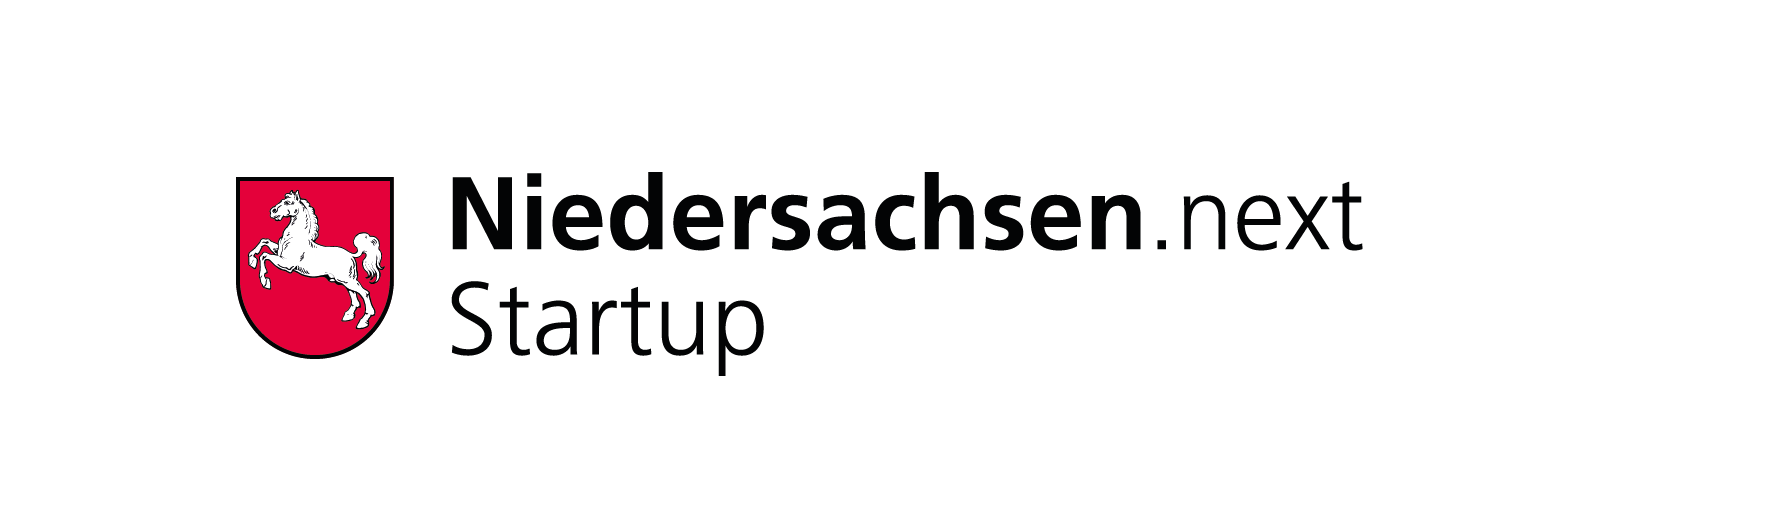 Niedersachsen.next Startup